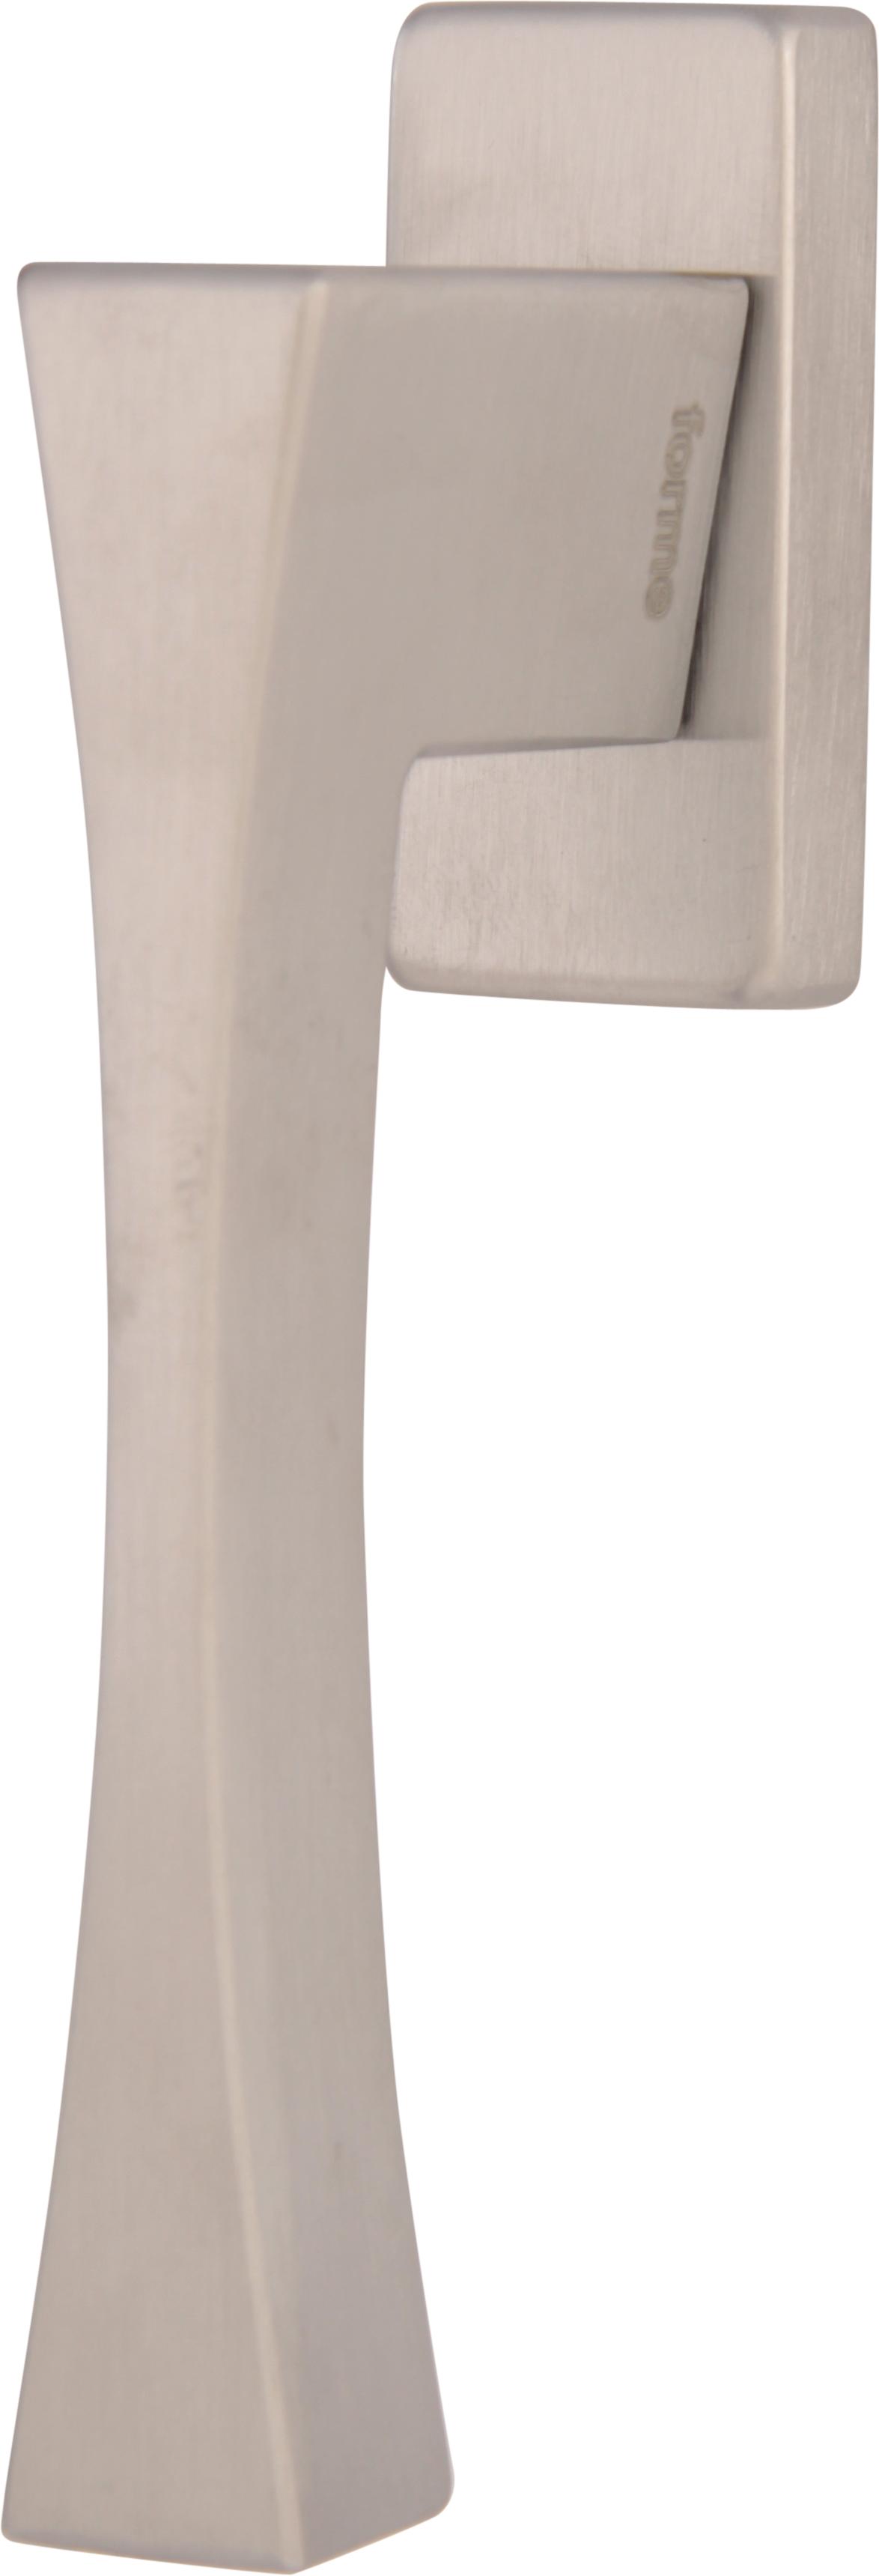 Оконная ручка A0213 Artemide Матовый хром